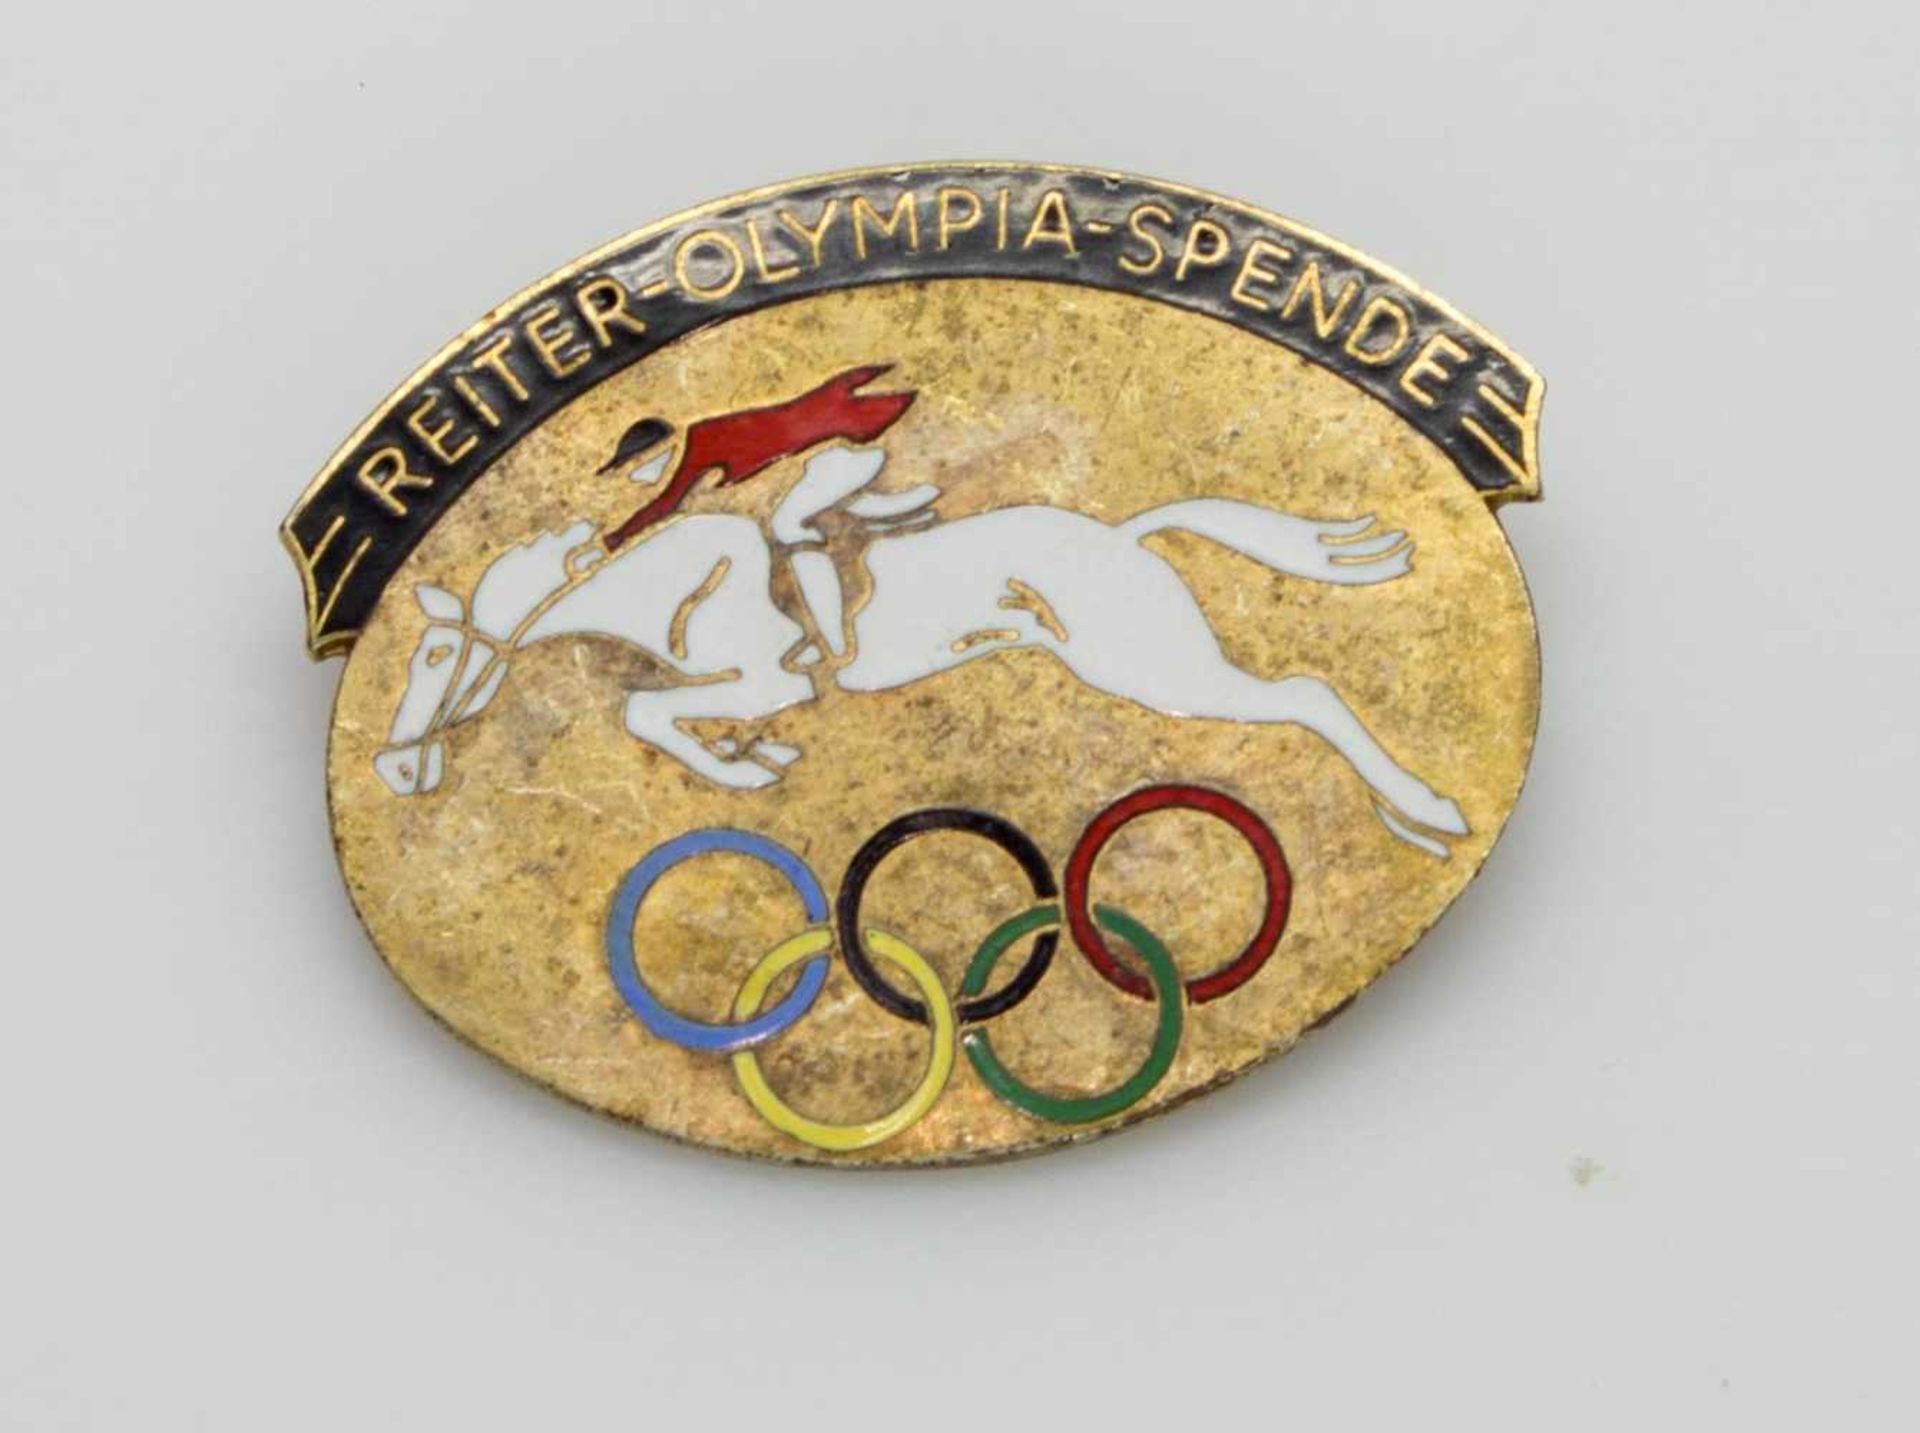 AbzeichenIII. Reich, „Reiter-Olympia-Spende", vergoldetes, emailliertes Abzeichen mit springendem